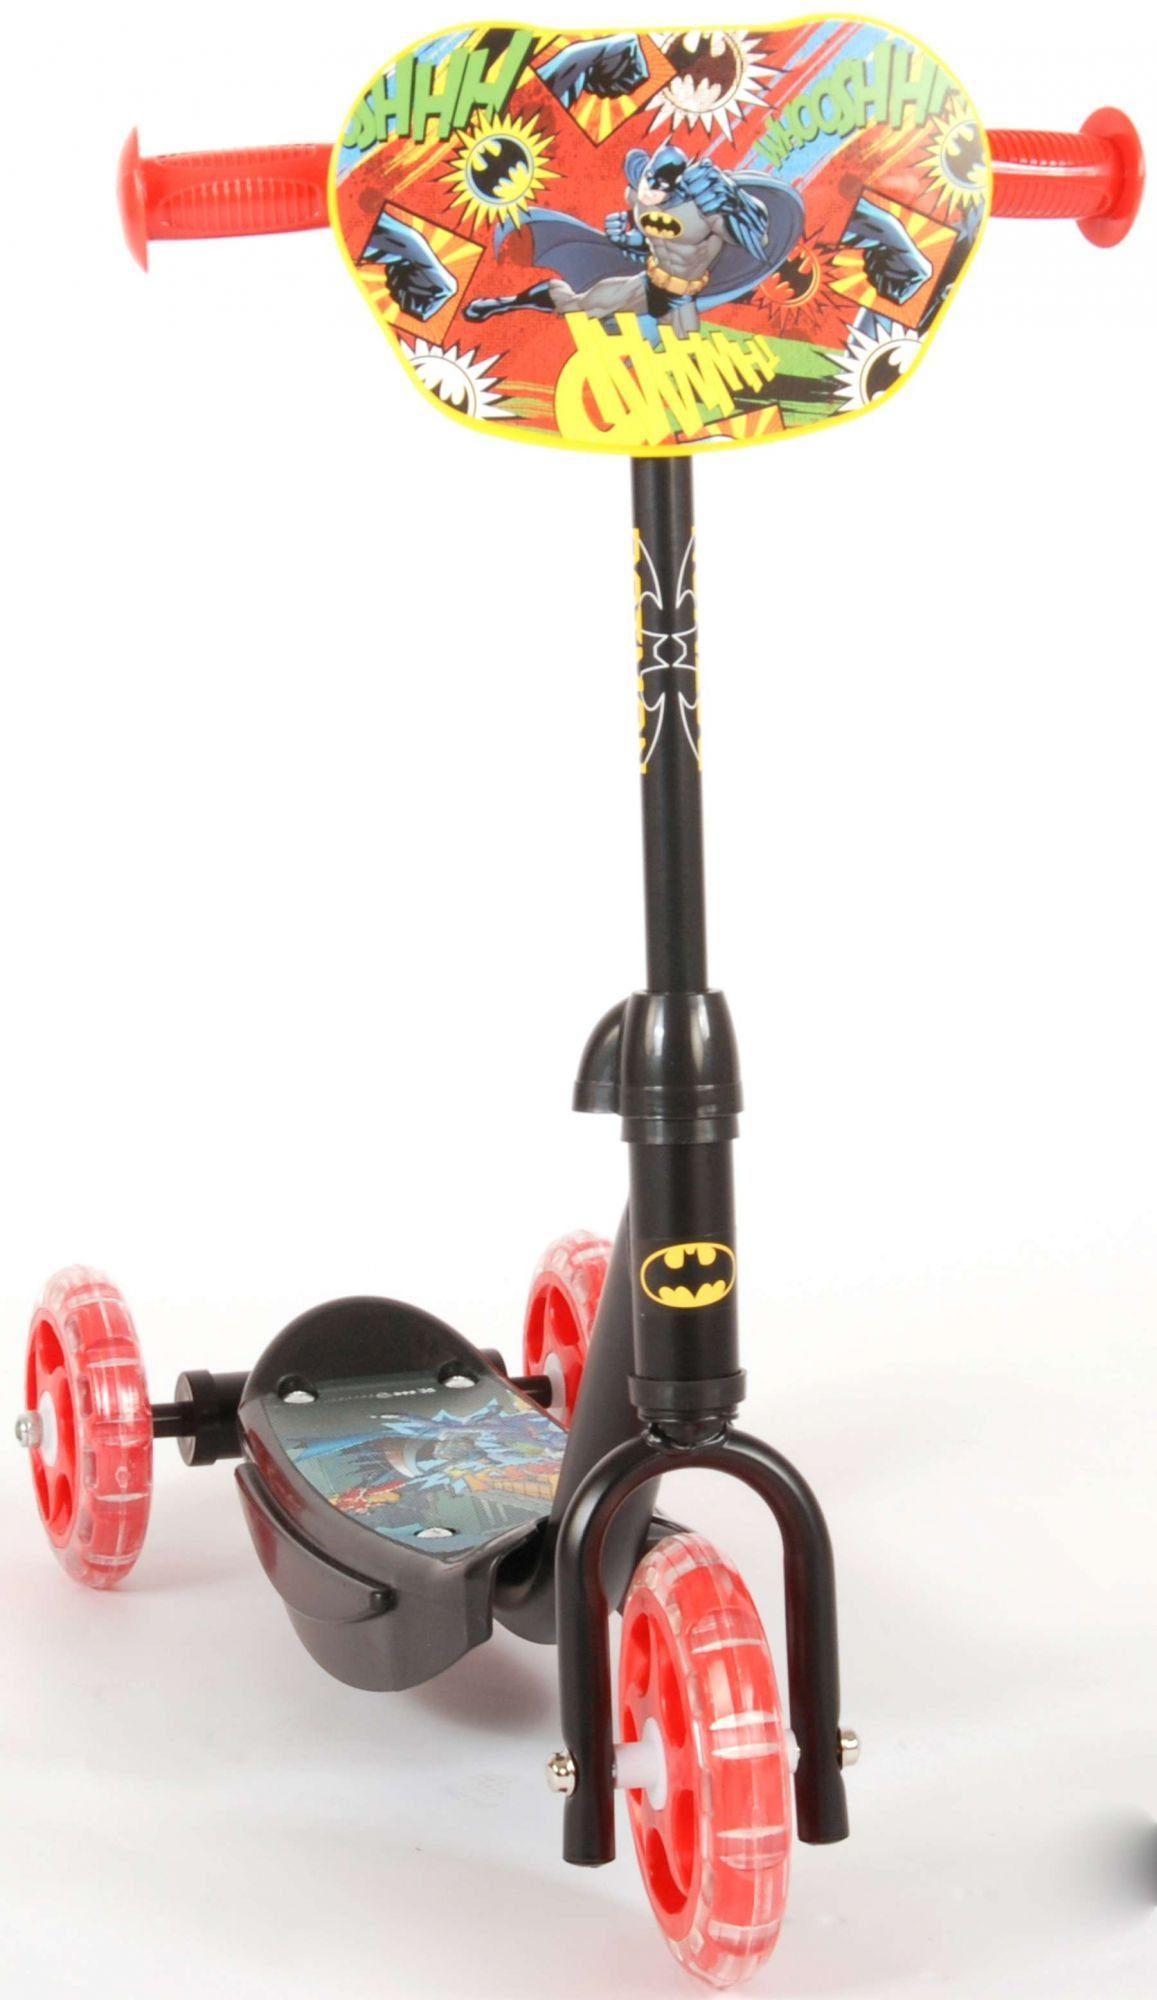 Kinder-Scooter - zusammengebaut, 20kg, Alter 2 Volare 6 max. schwarz Jahre Tretroller Kinderroller Batman Kunststoffräder 85%